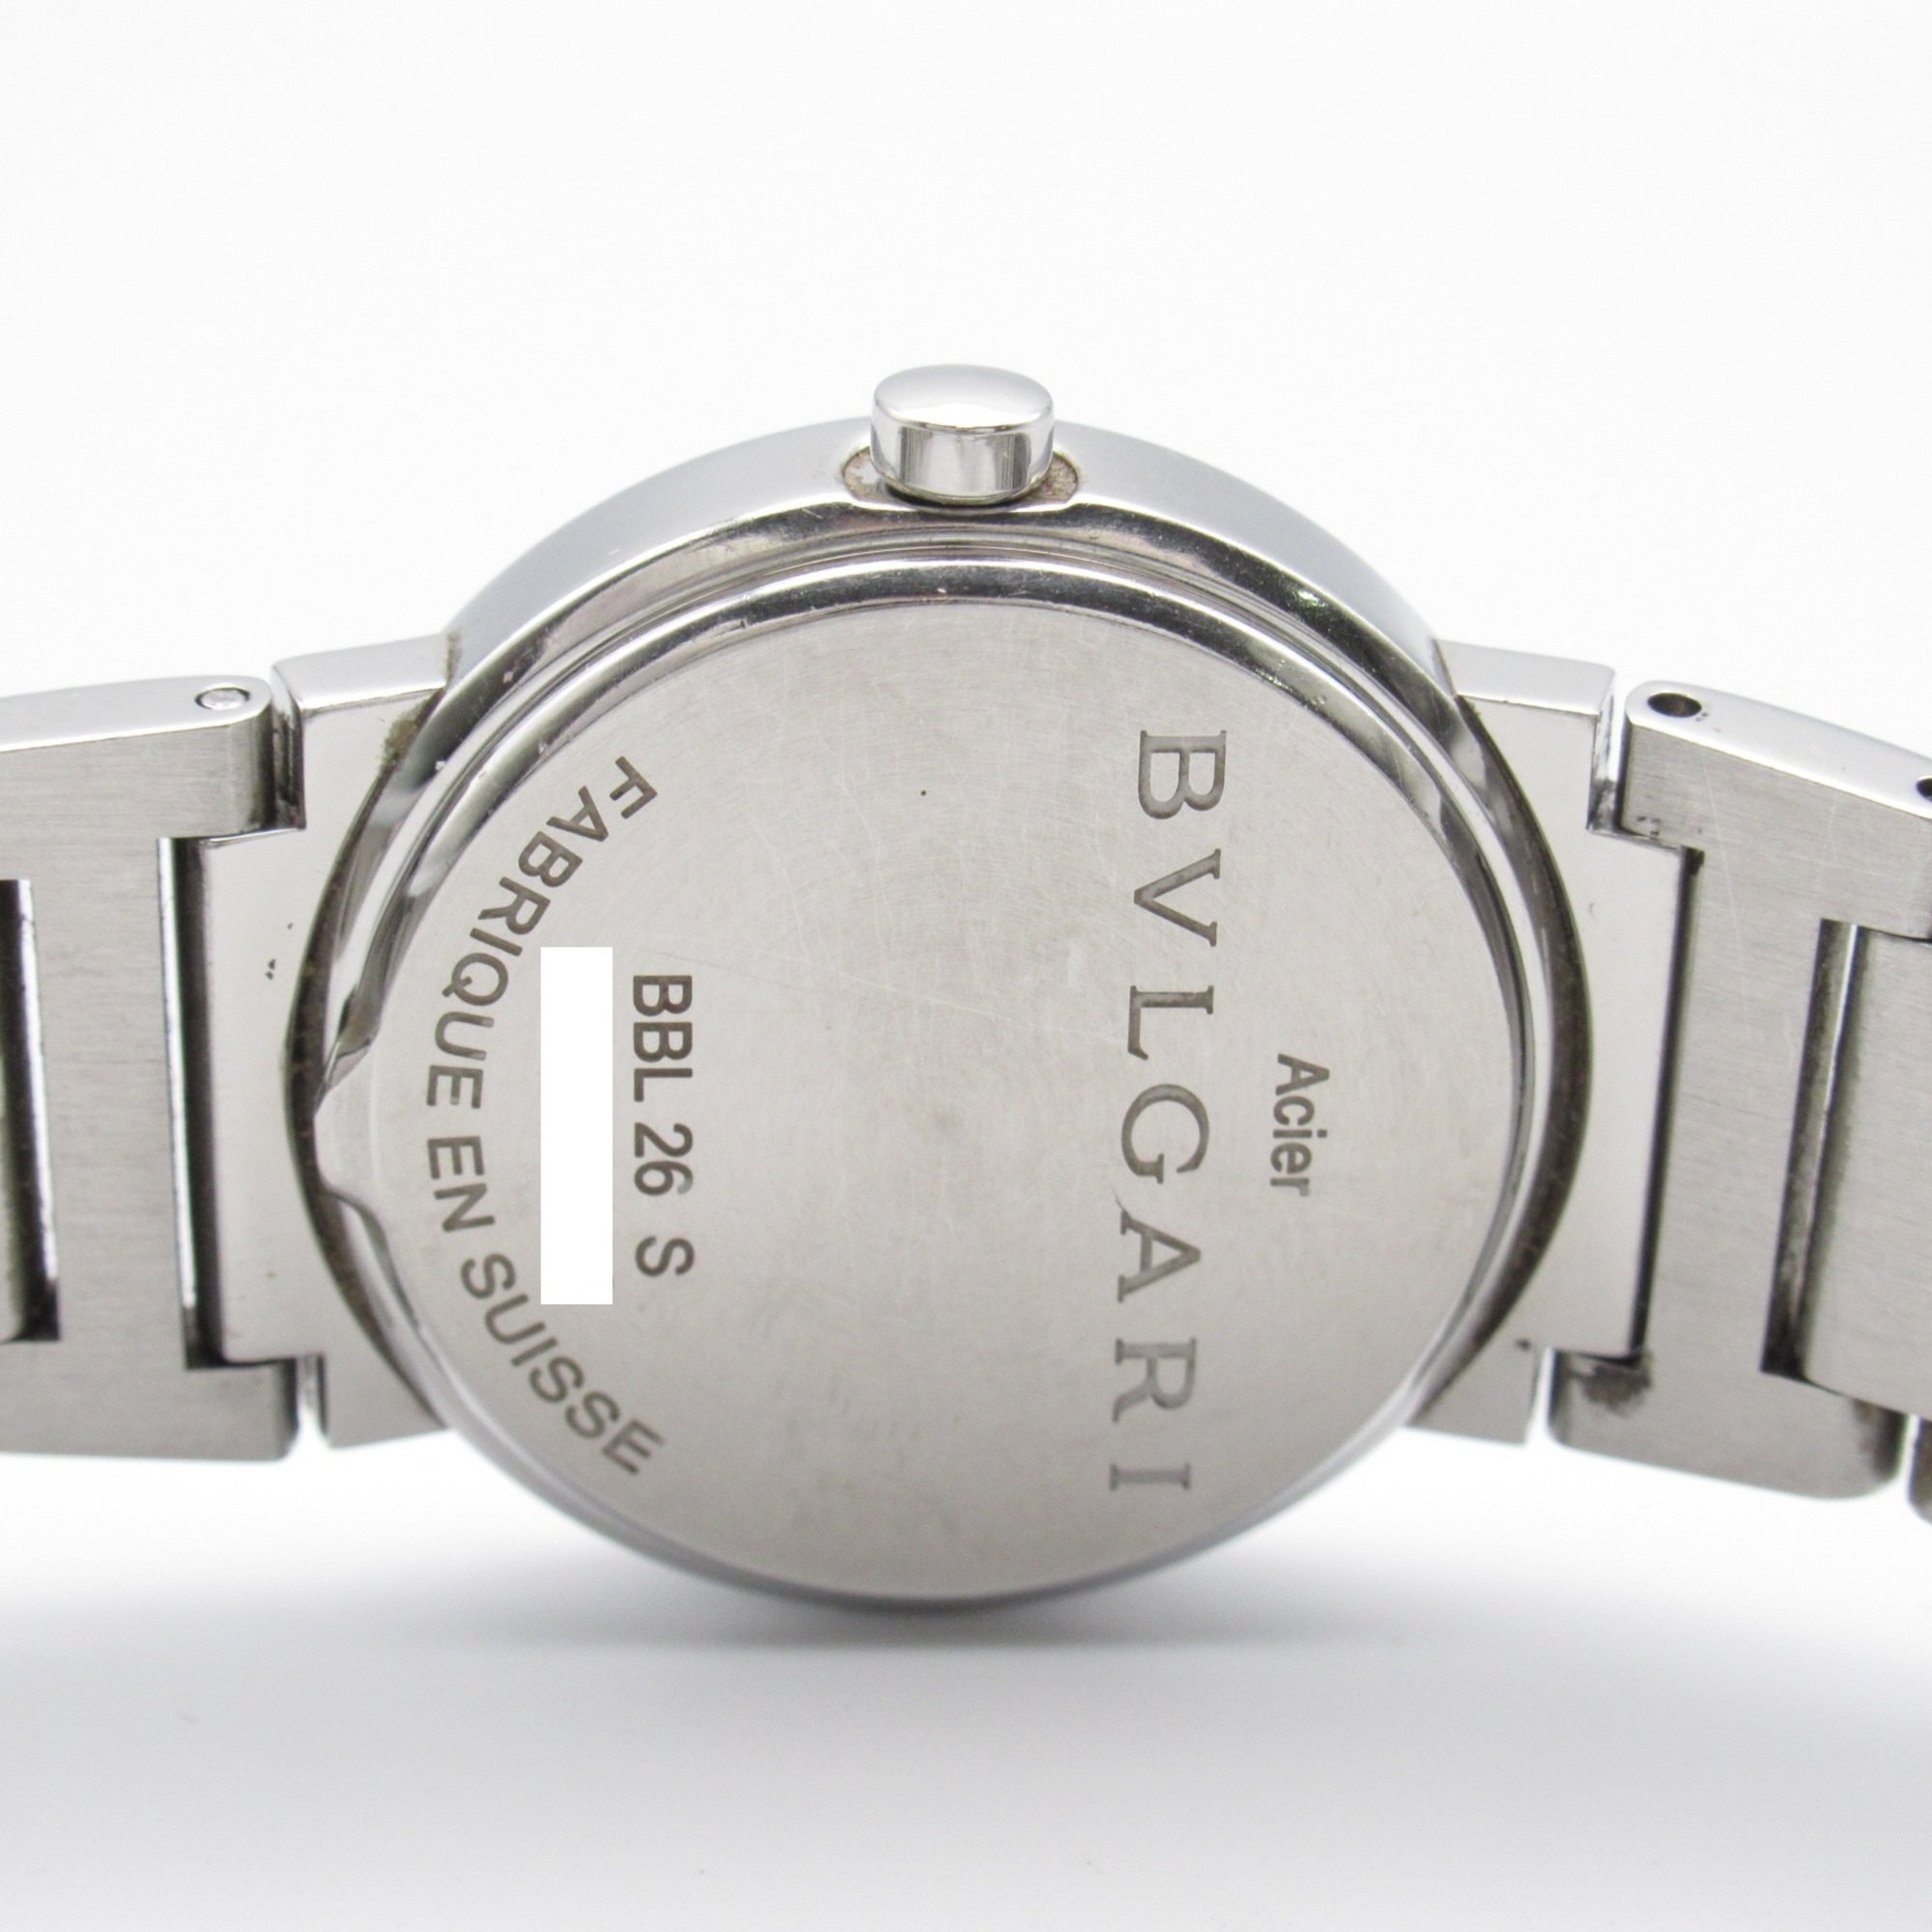 BVLGARI BVLGARI BVLGARI 12P diamond Wrist Watch BBL26S Quartz Black  Stainless Steel BBL26S